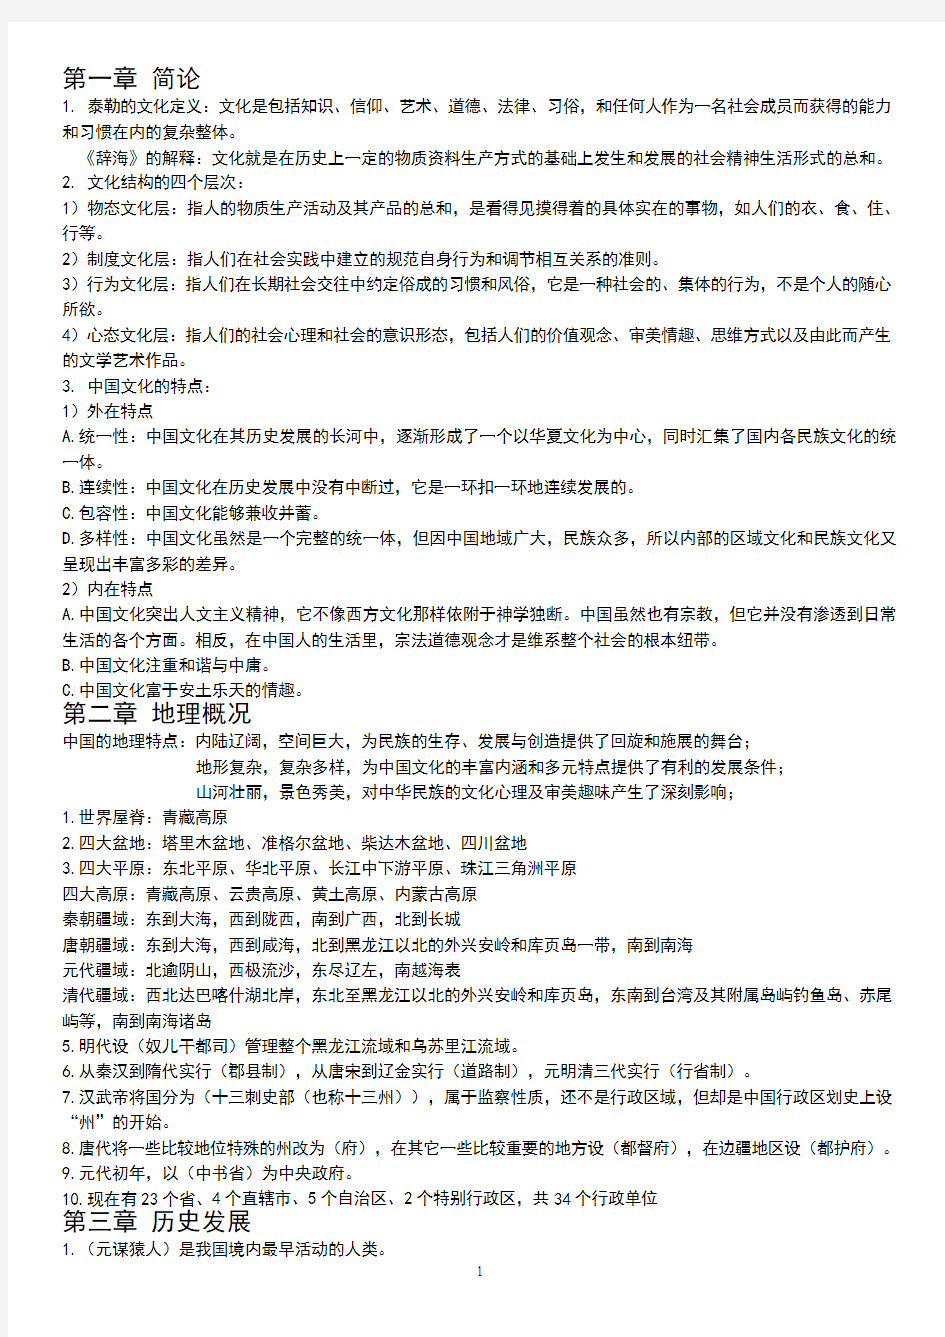 2015年考研《中国文化要略》考研笔记精简版